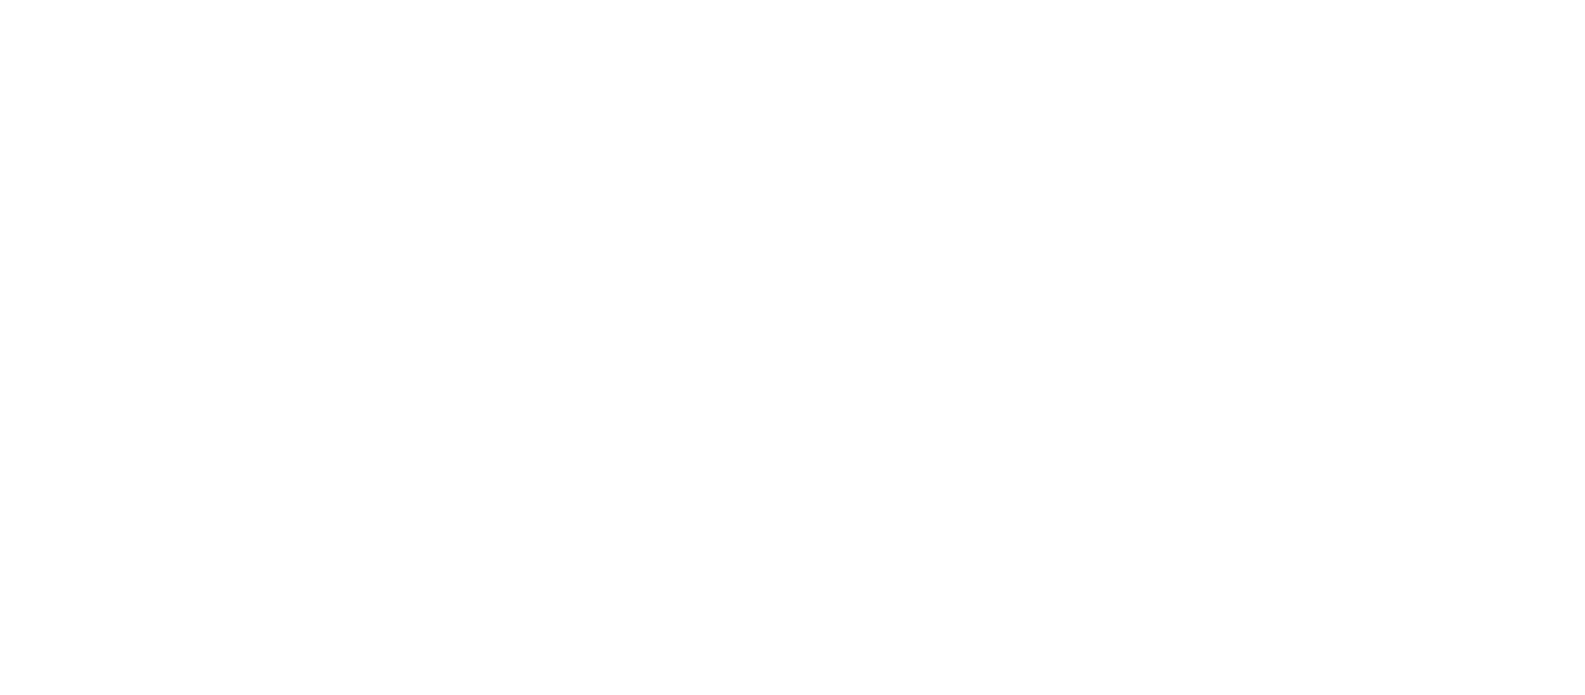 Café de Coral logo grand pour les fonds sombres (PNG transparent)